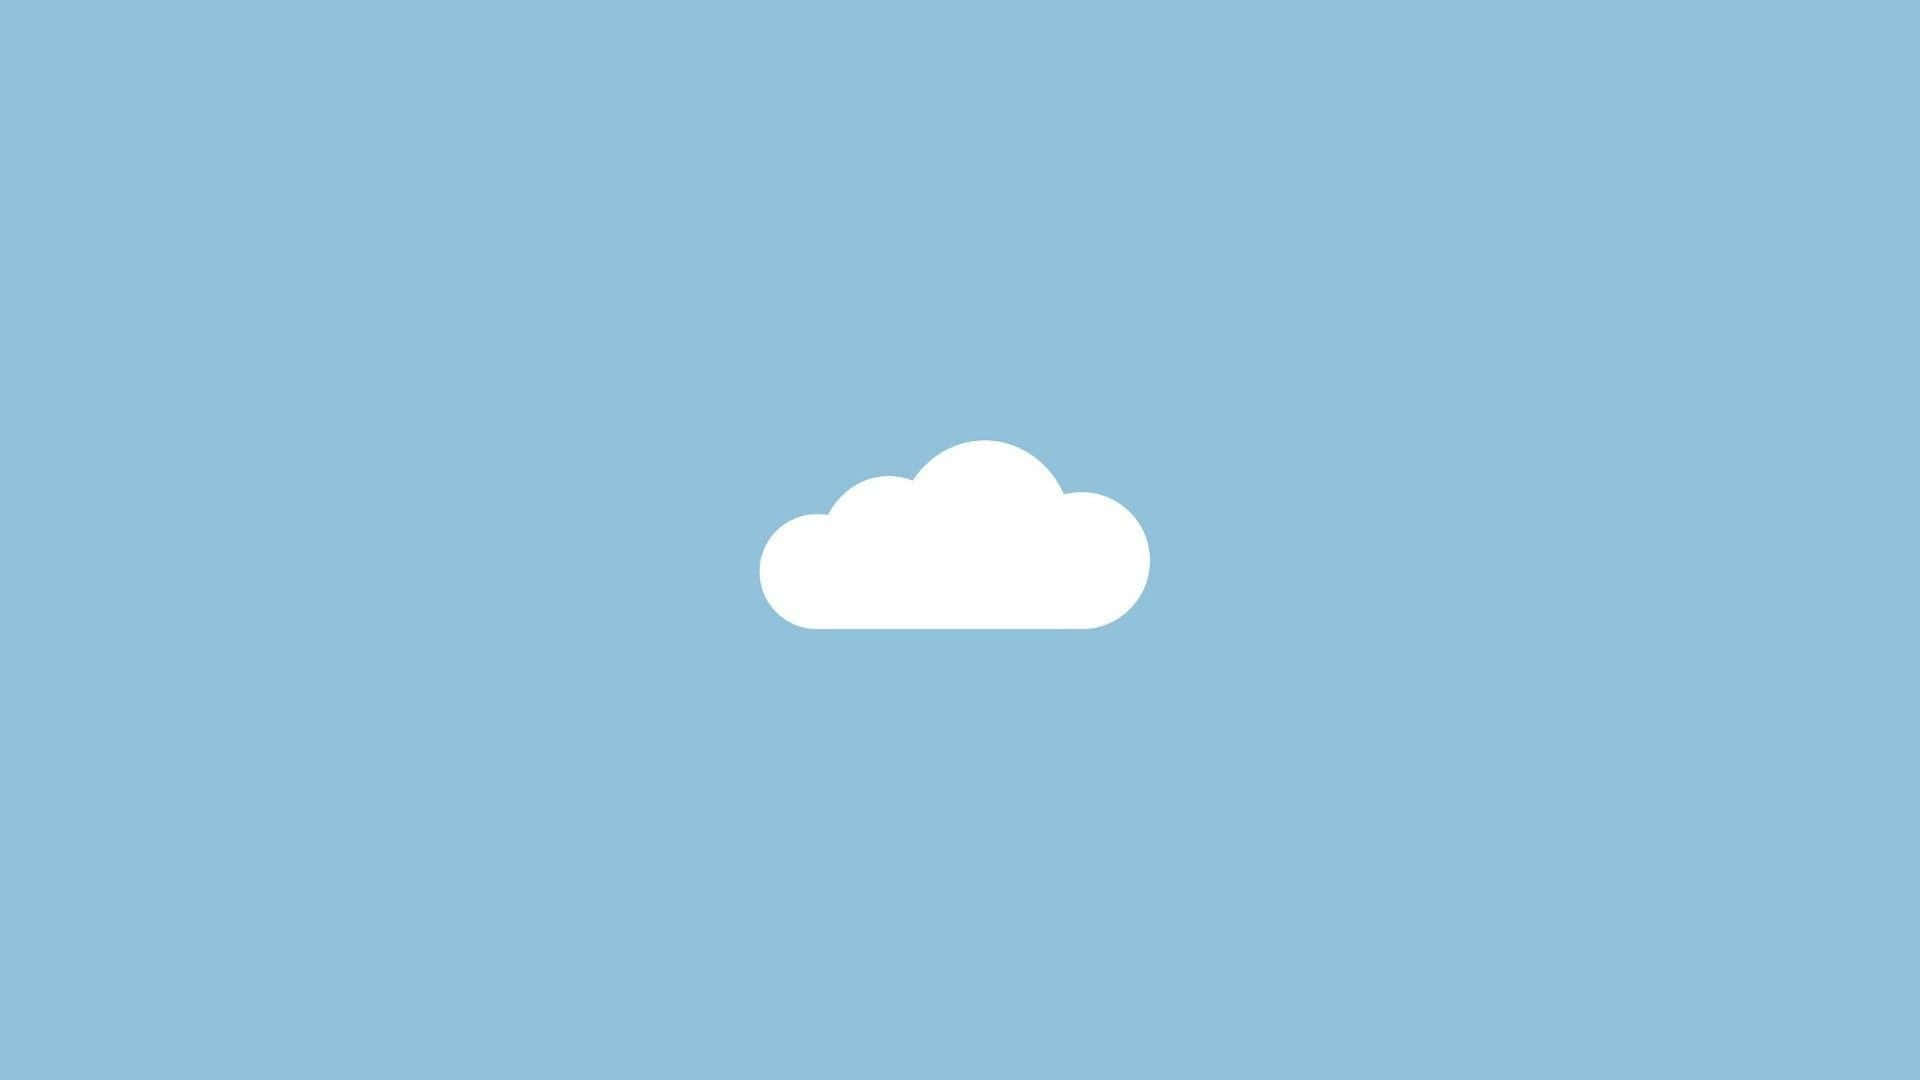 Et beroligende blåt pastel baggrund der står i kontrast til et livligt koboltblå himmel.